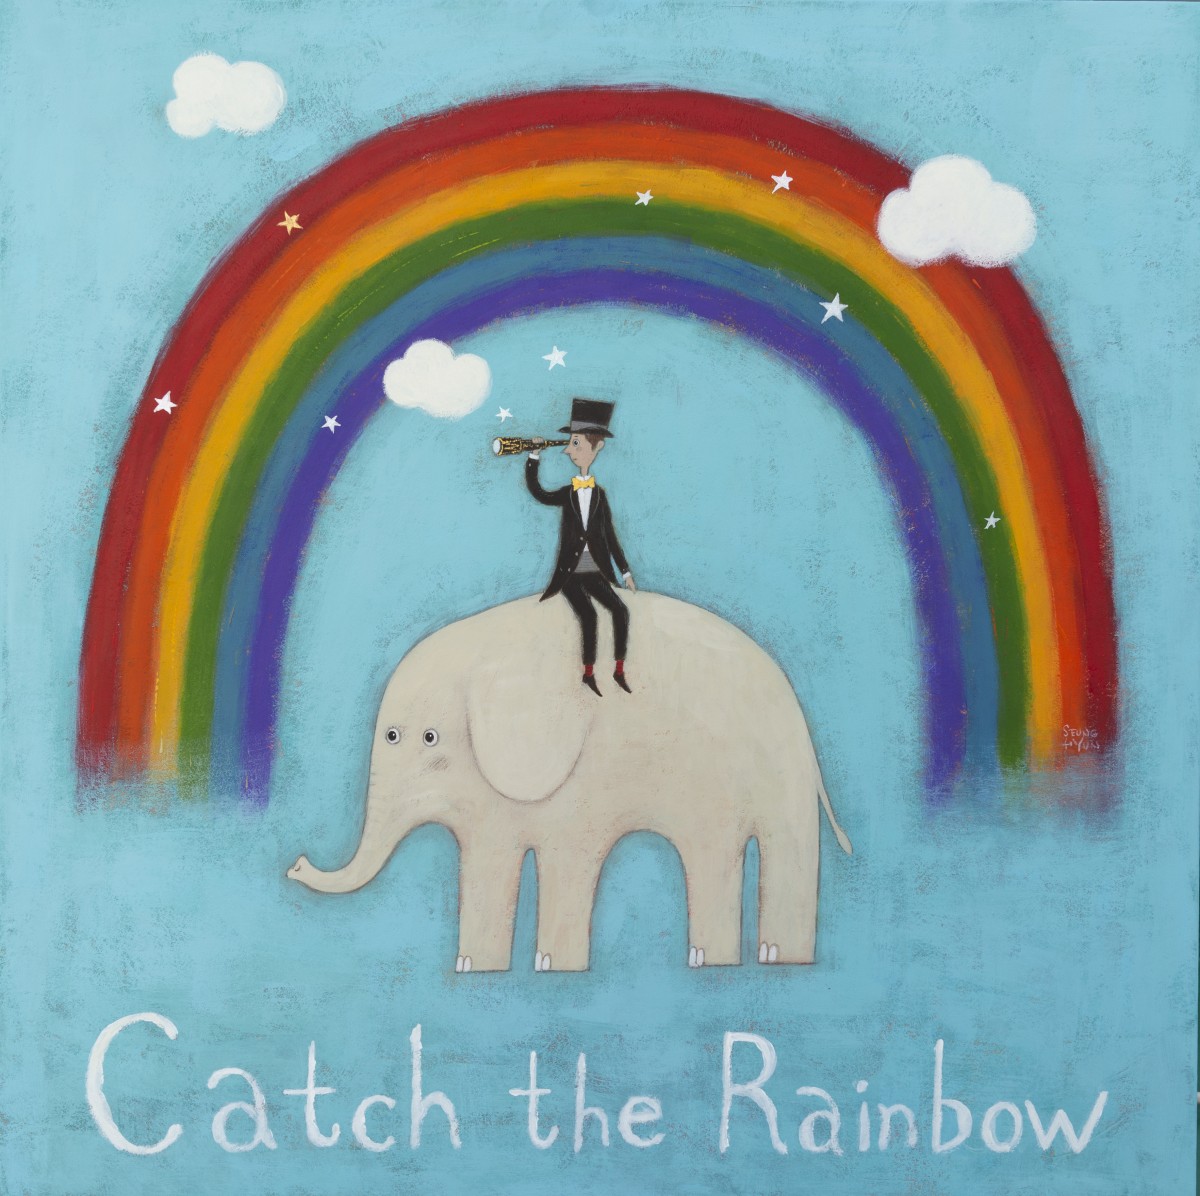 임승현, Catch the rainbow, 62x62cm, 한지에과슈, 2022